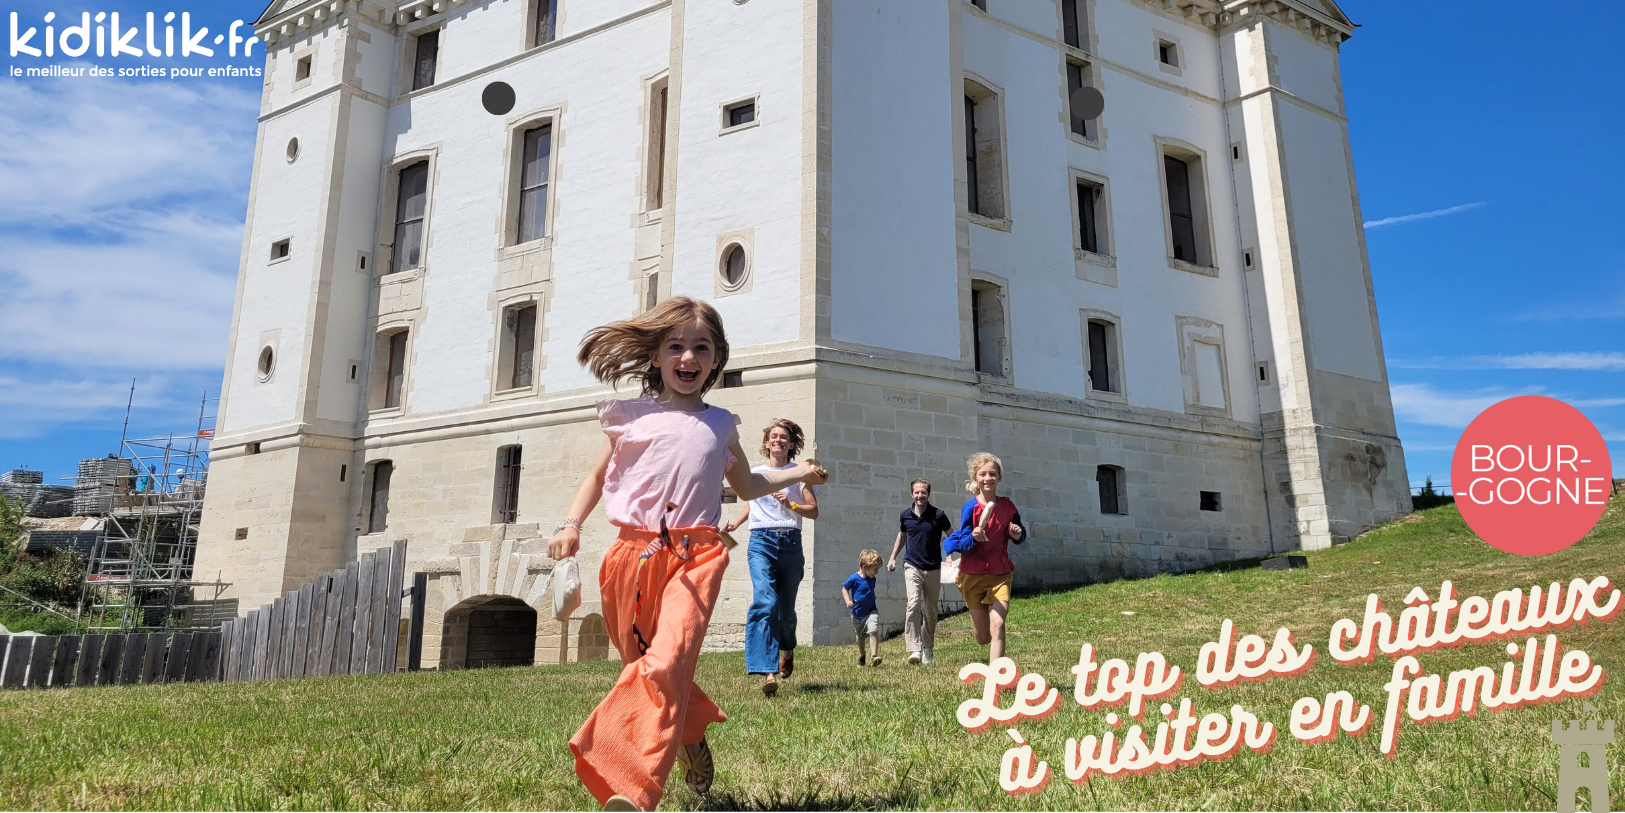 Notre top 10 des châteaux à visiter en famille en Bourgogne